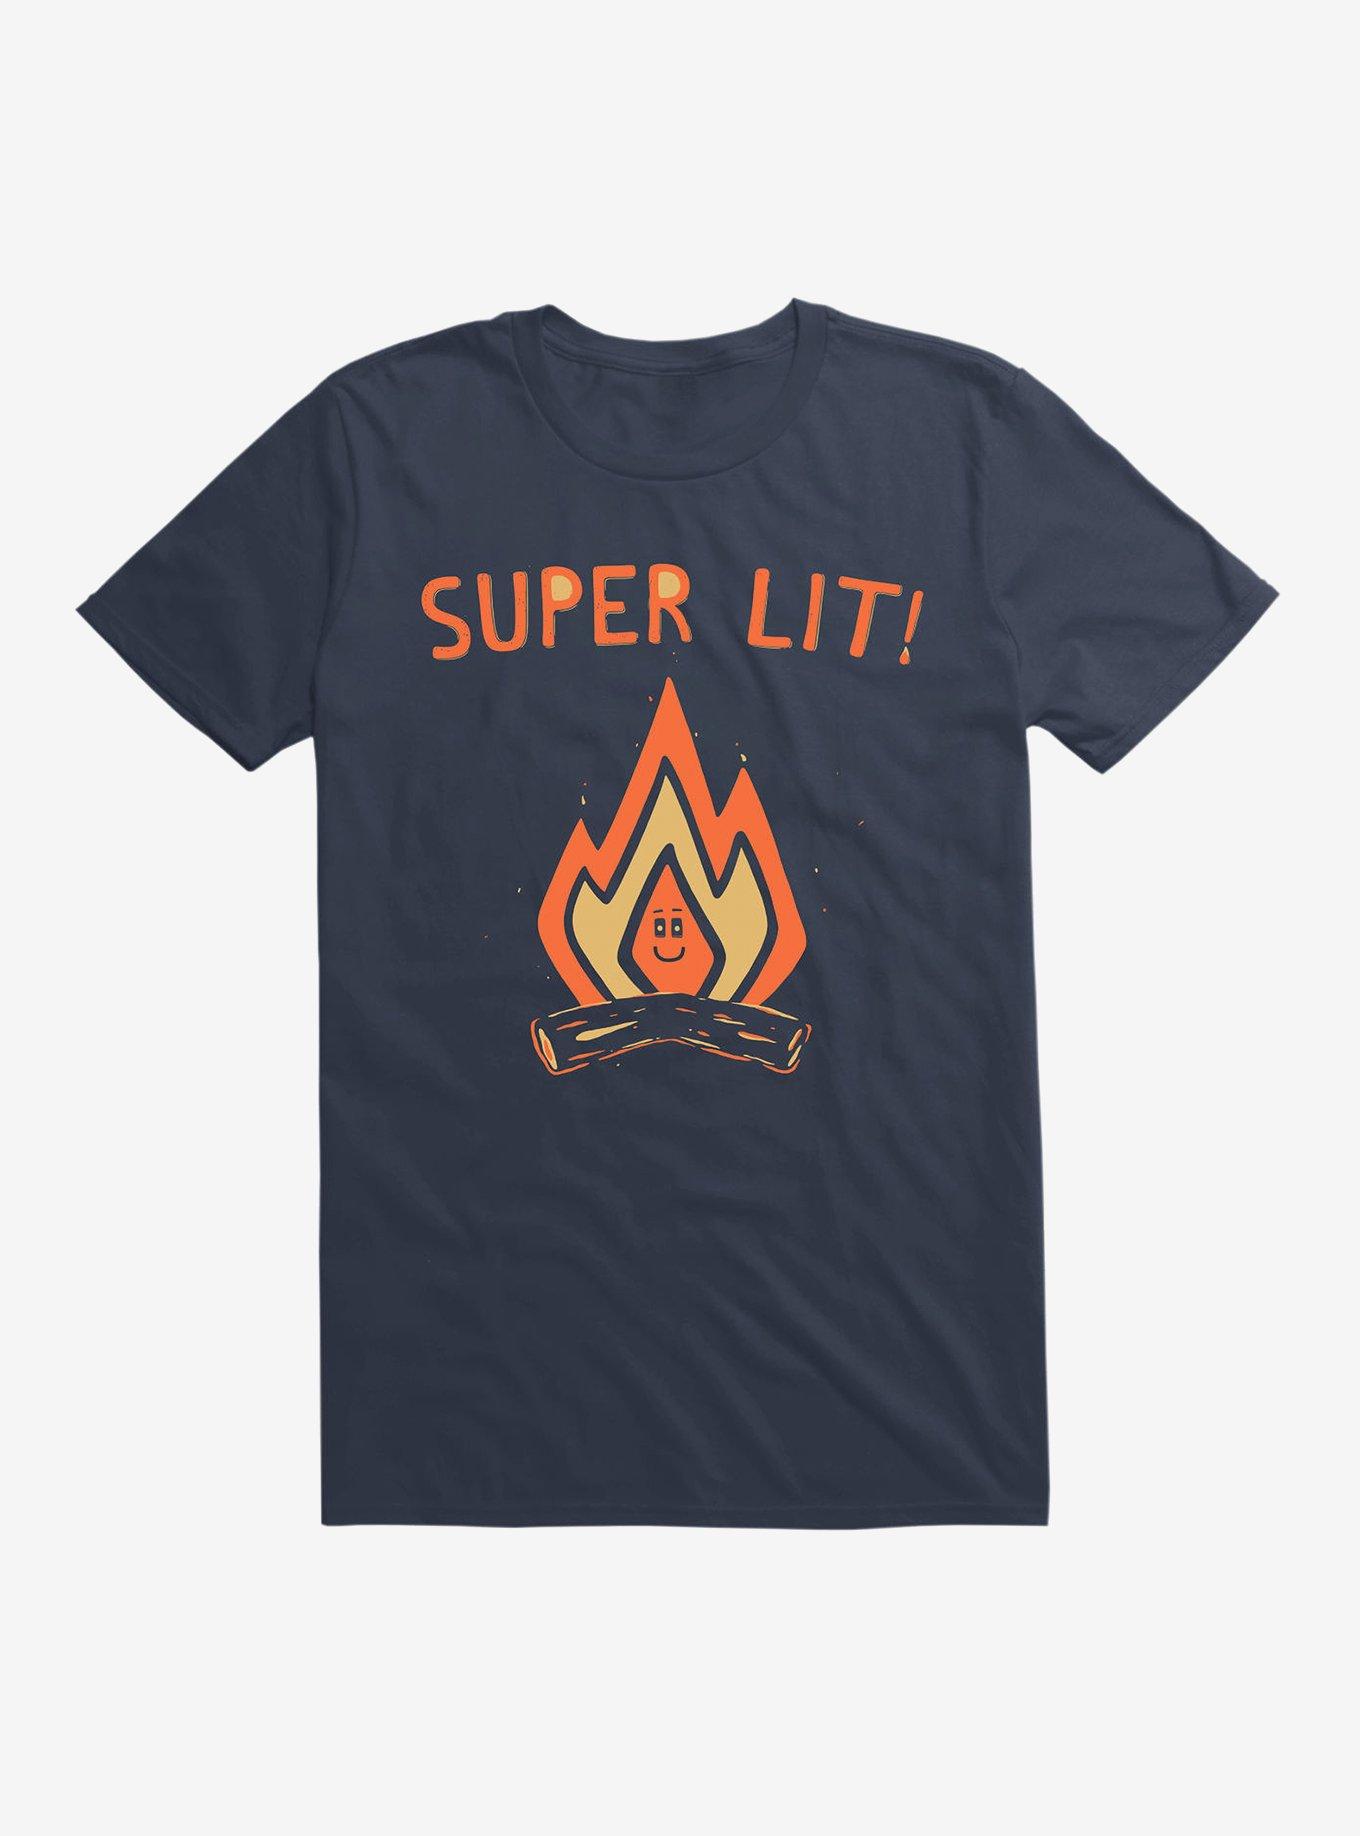 Super Lit T-Shirt, NAVY, hi-res